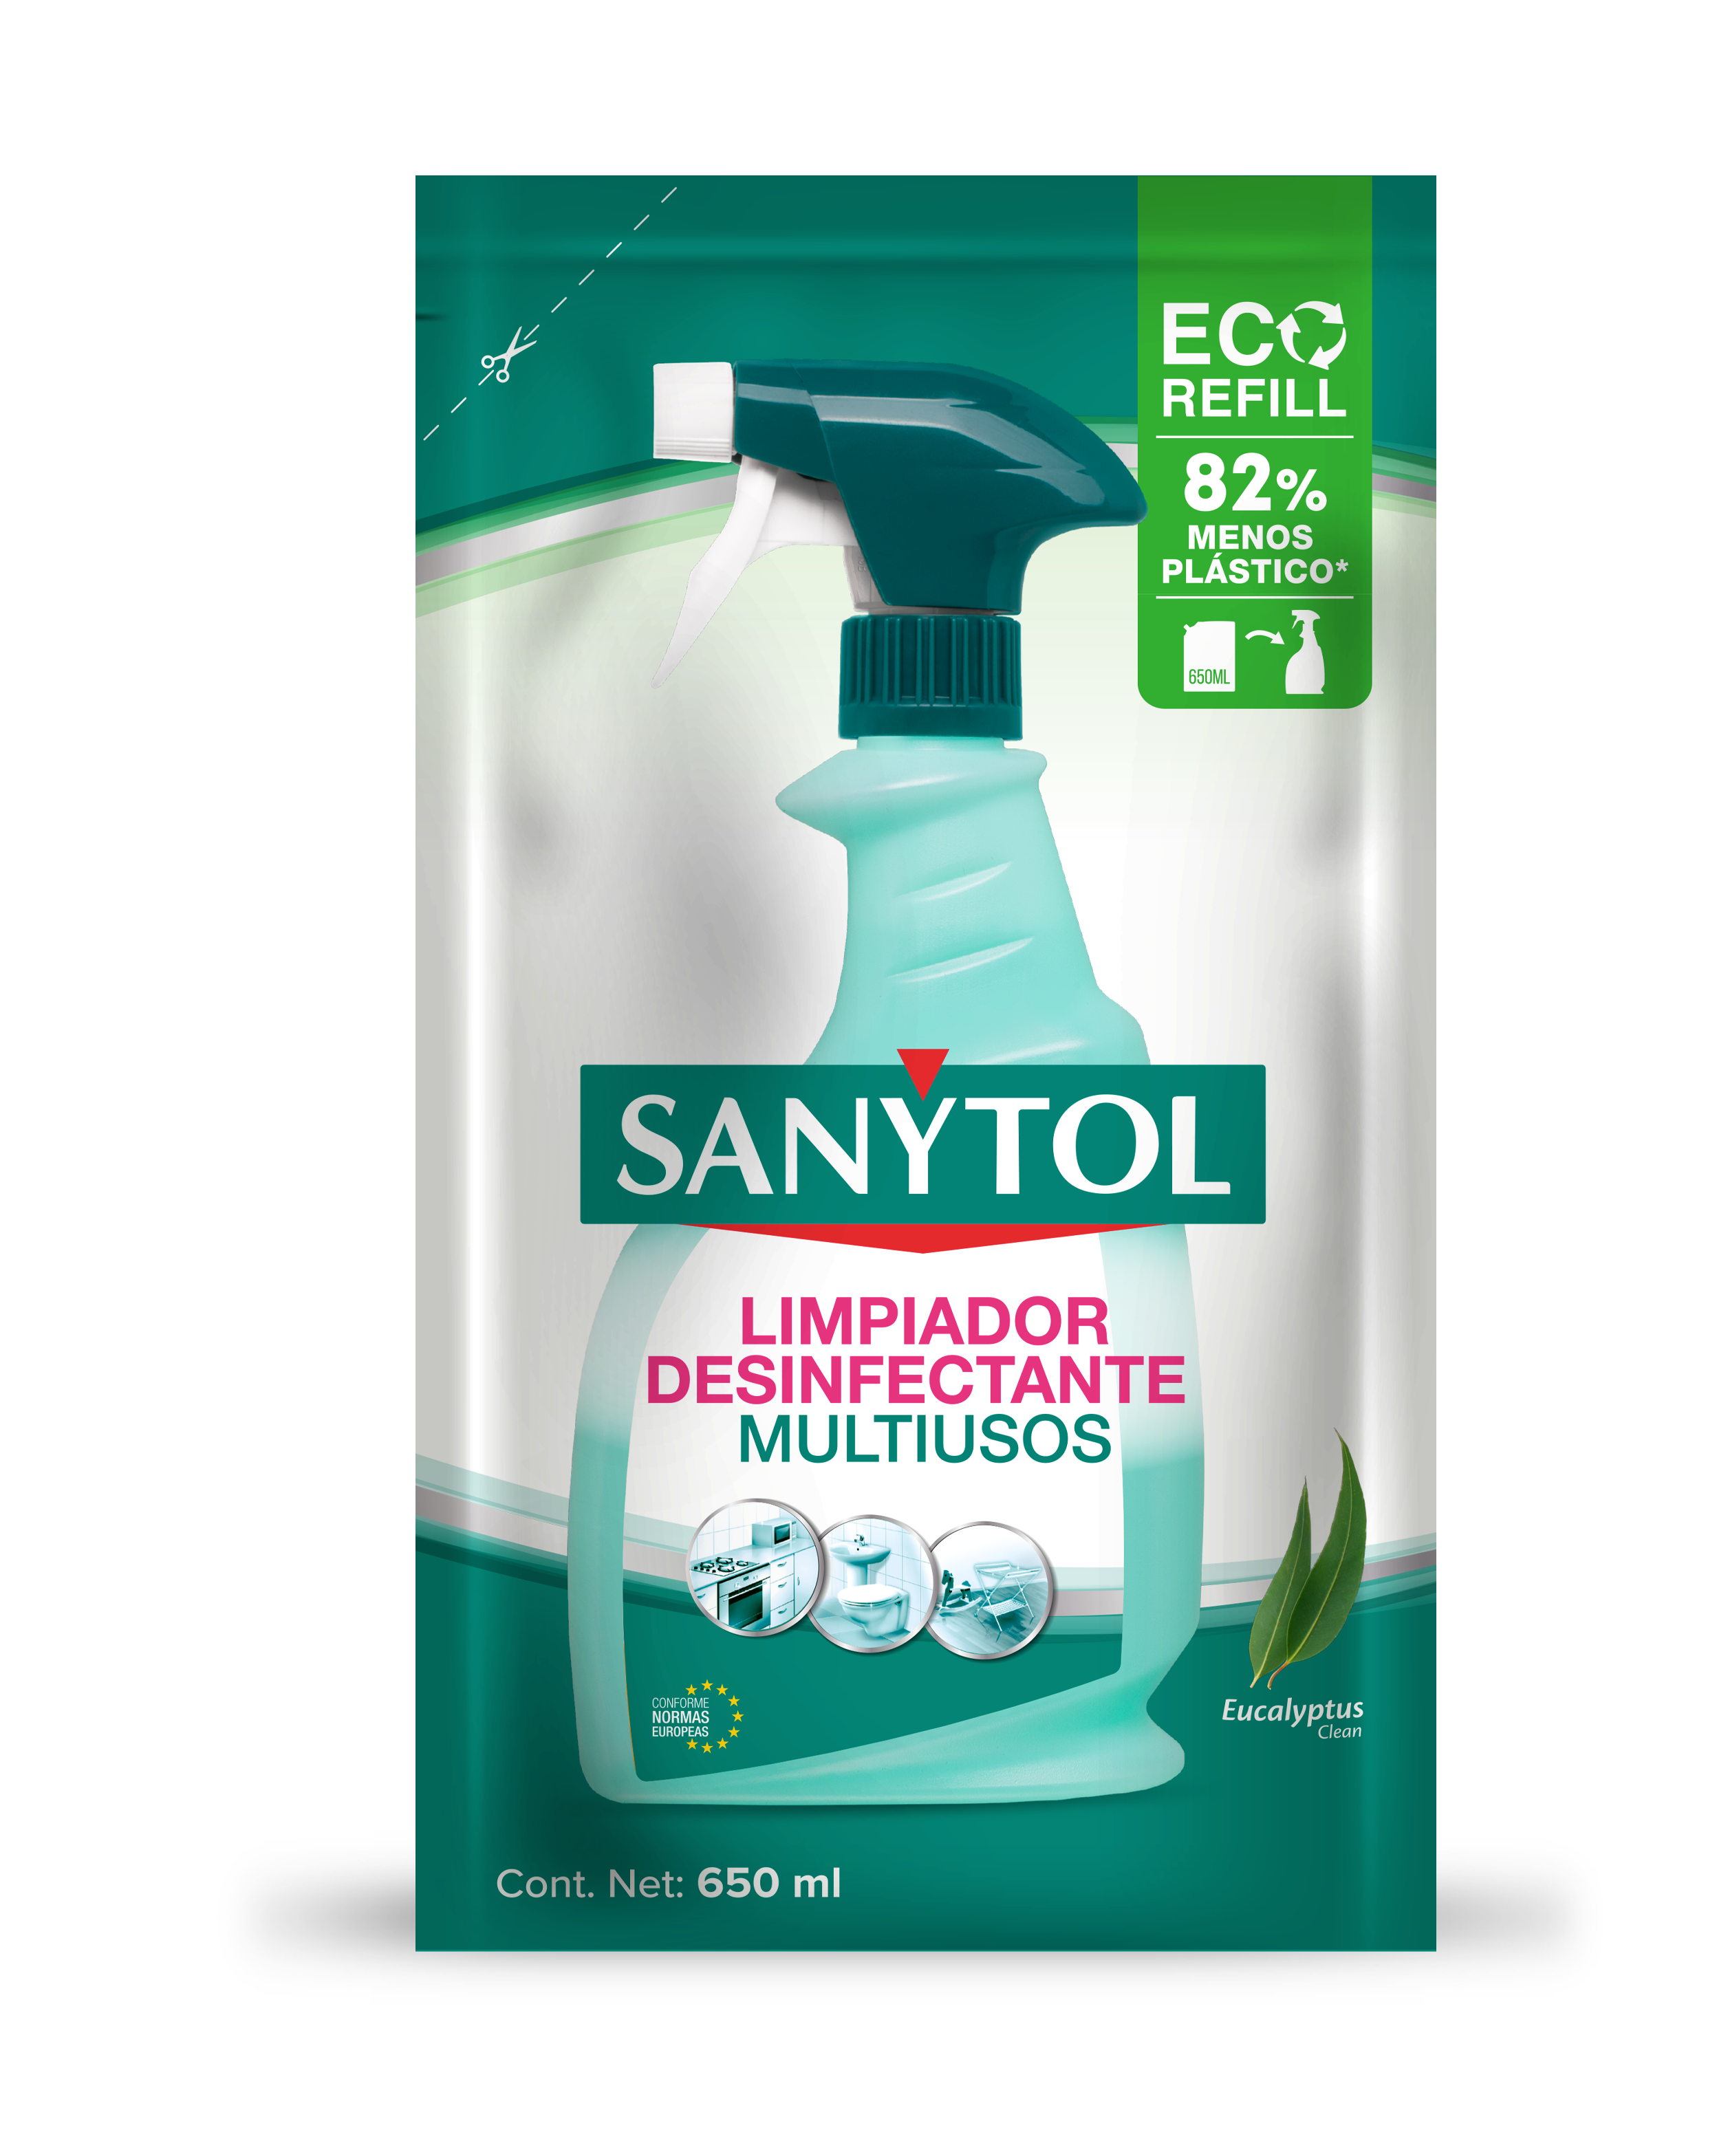 Sanytol, el experto en desinfección sin cloro - Sanytol